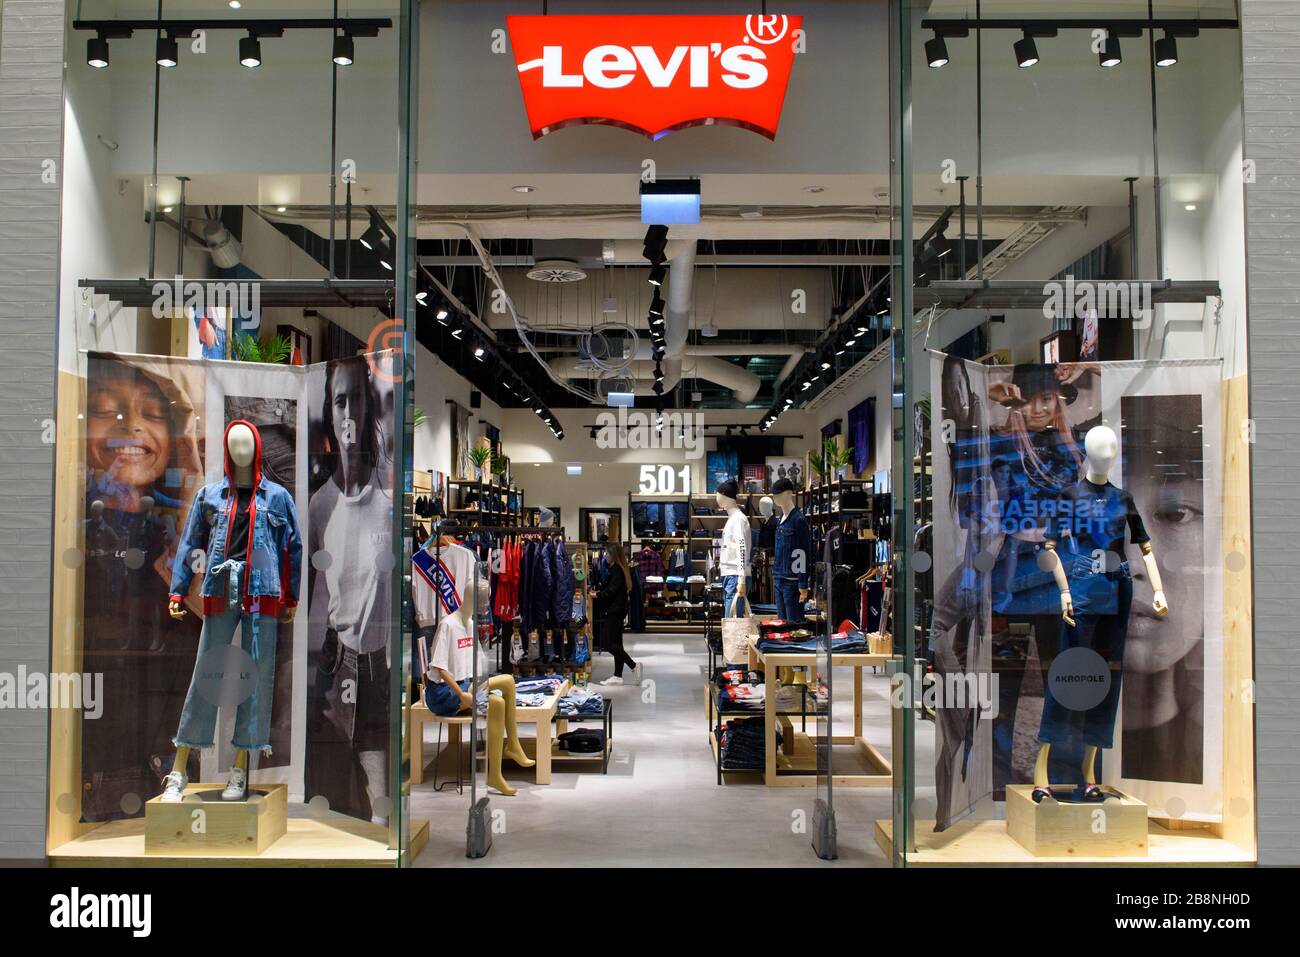 levis shop glasgow